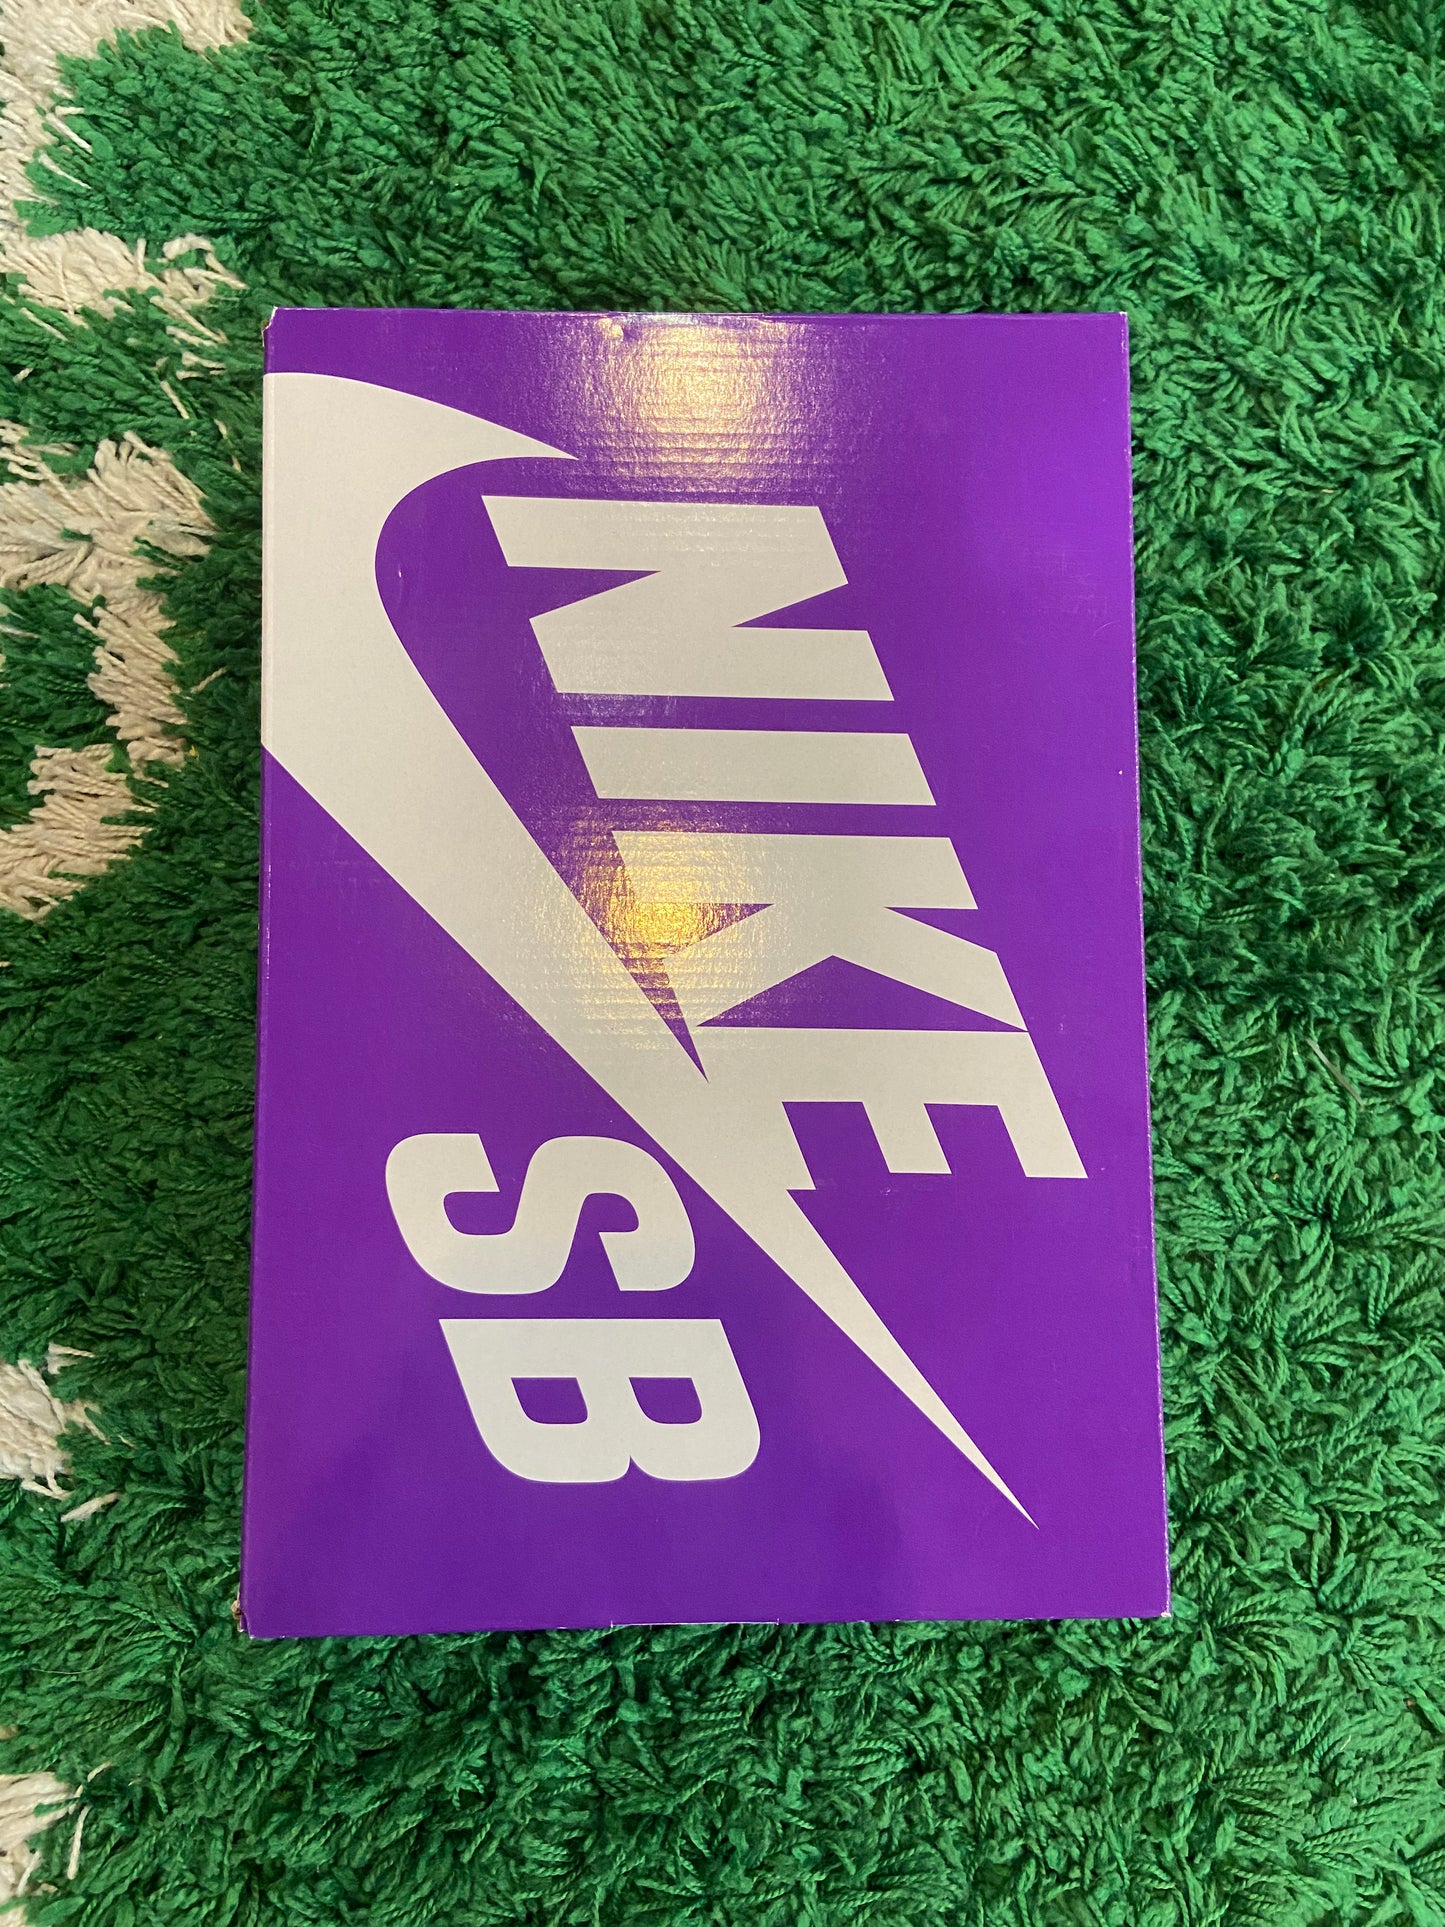 Nike SB Dunk Low “Wheat”